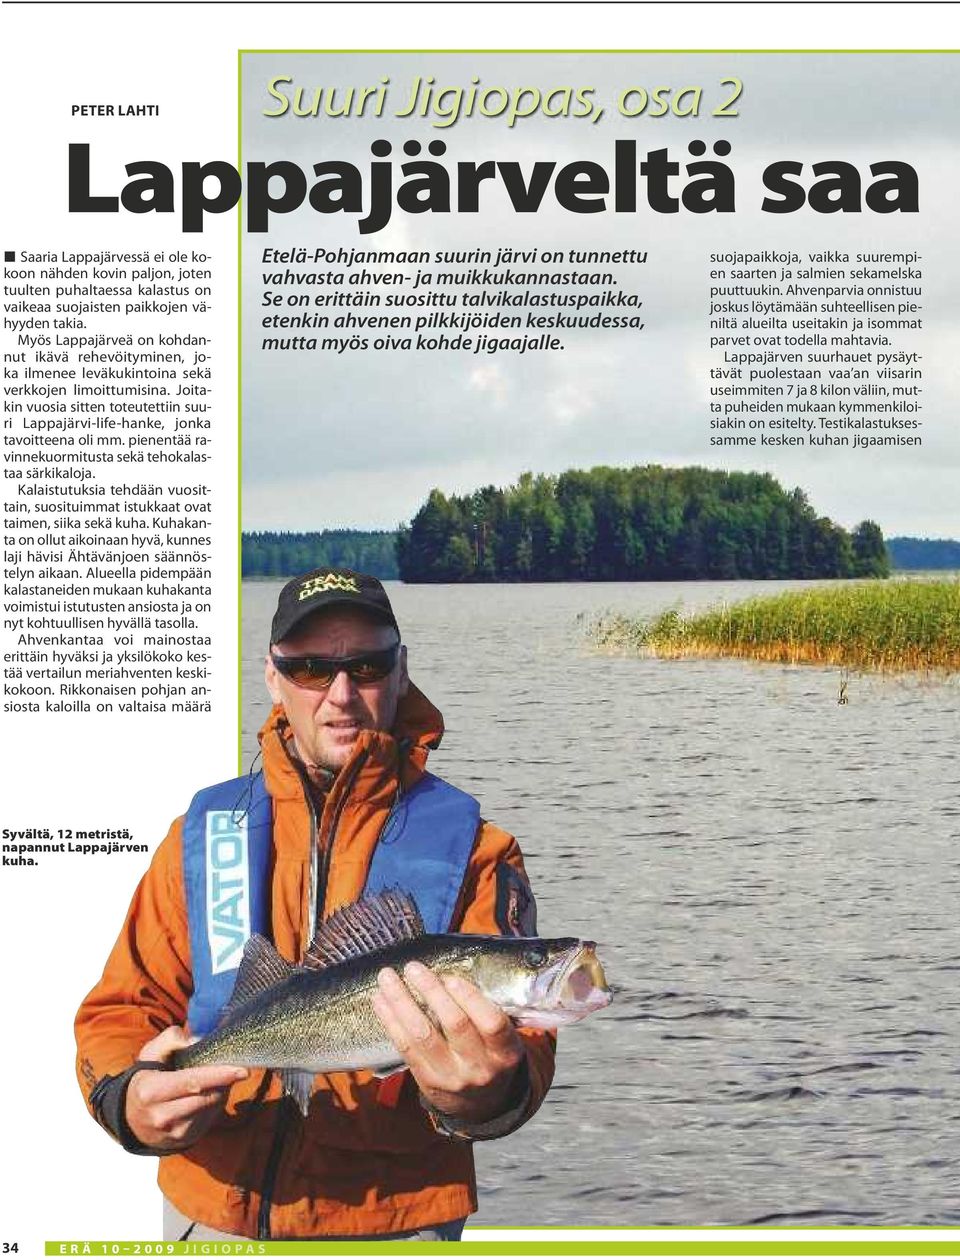 Joitakin vuosia sitten toteutettiin suuri Lappajärvi-life-hanke, jonka tavoitteena oli mm. pienentää ravinnekuormitusta sekä tehokalastaa särkikaloja.